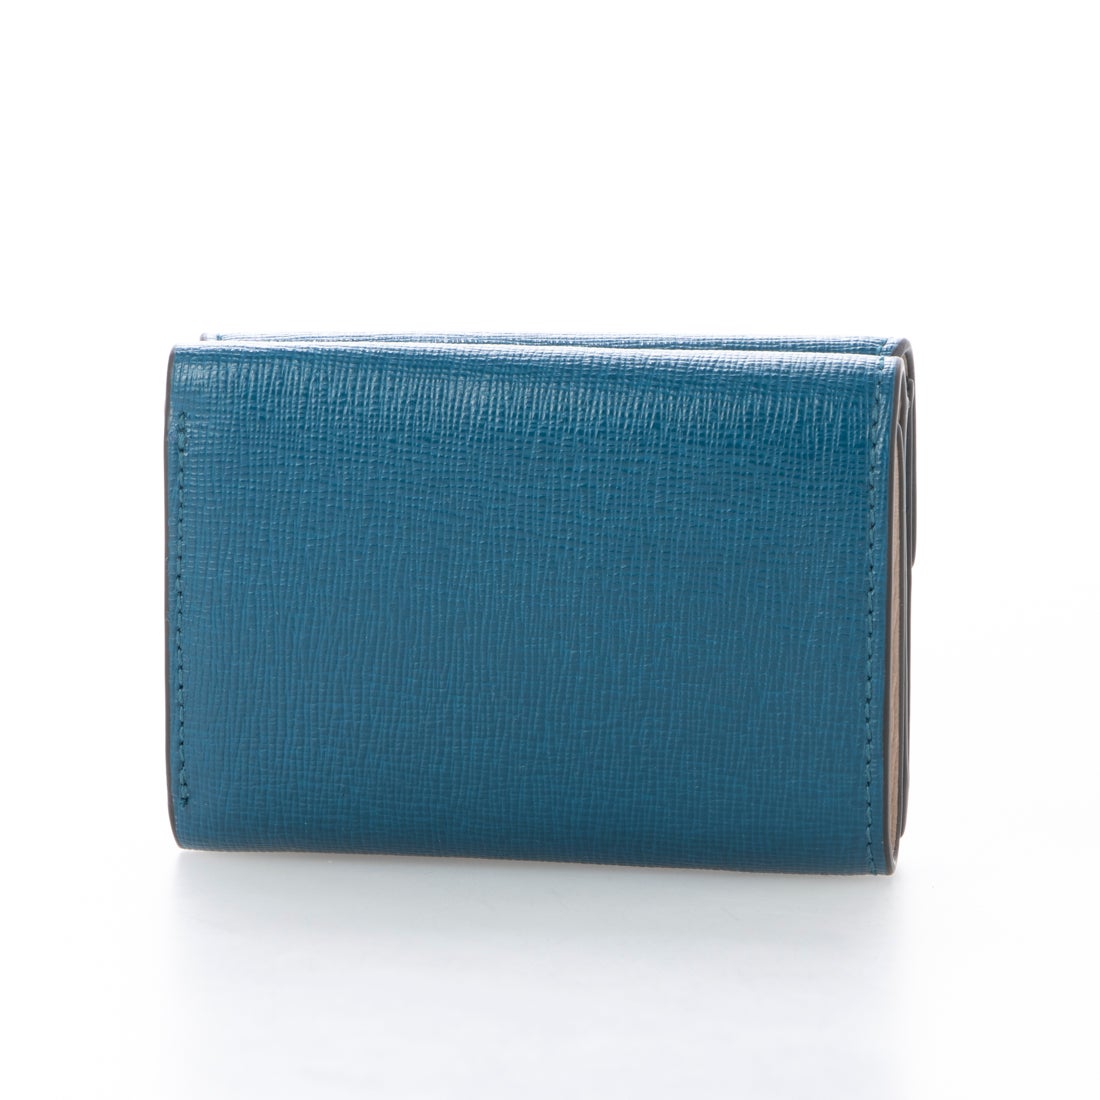 残り僅か‼︎新品 FURLA(フルラ) 折り財布 ブルー 紺 | myglobaltax.com